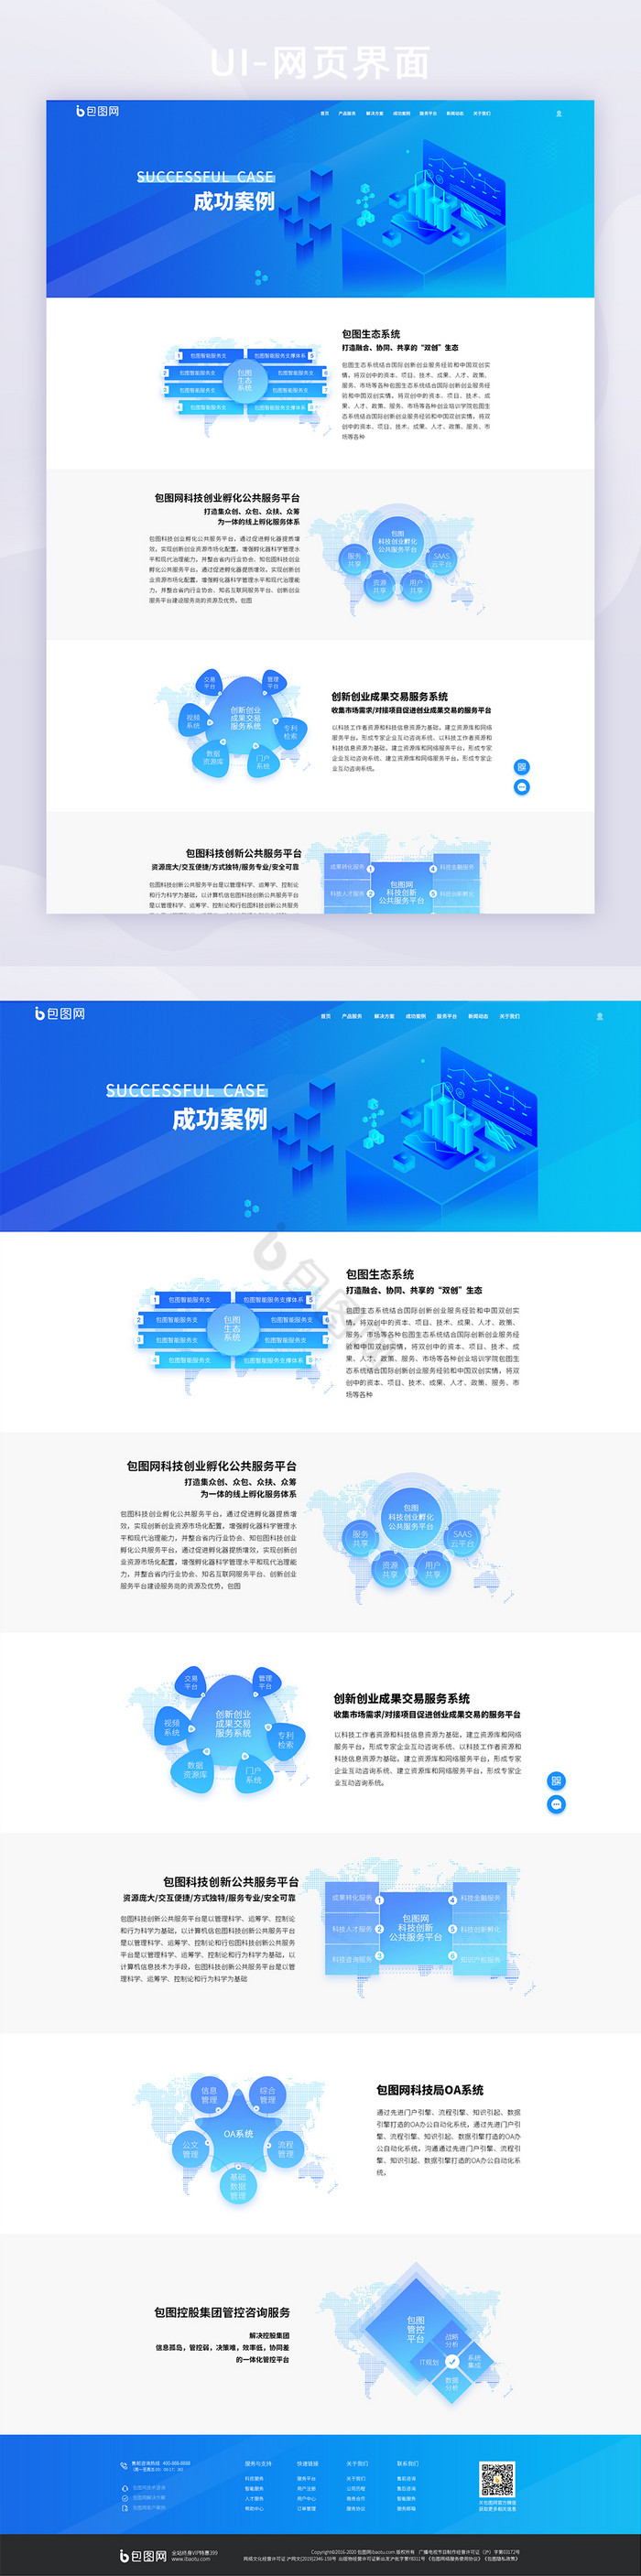 蓝色扁平化科技企业官网成功案例模块界面